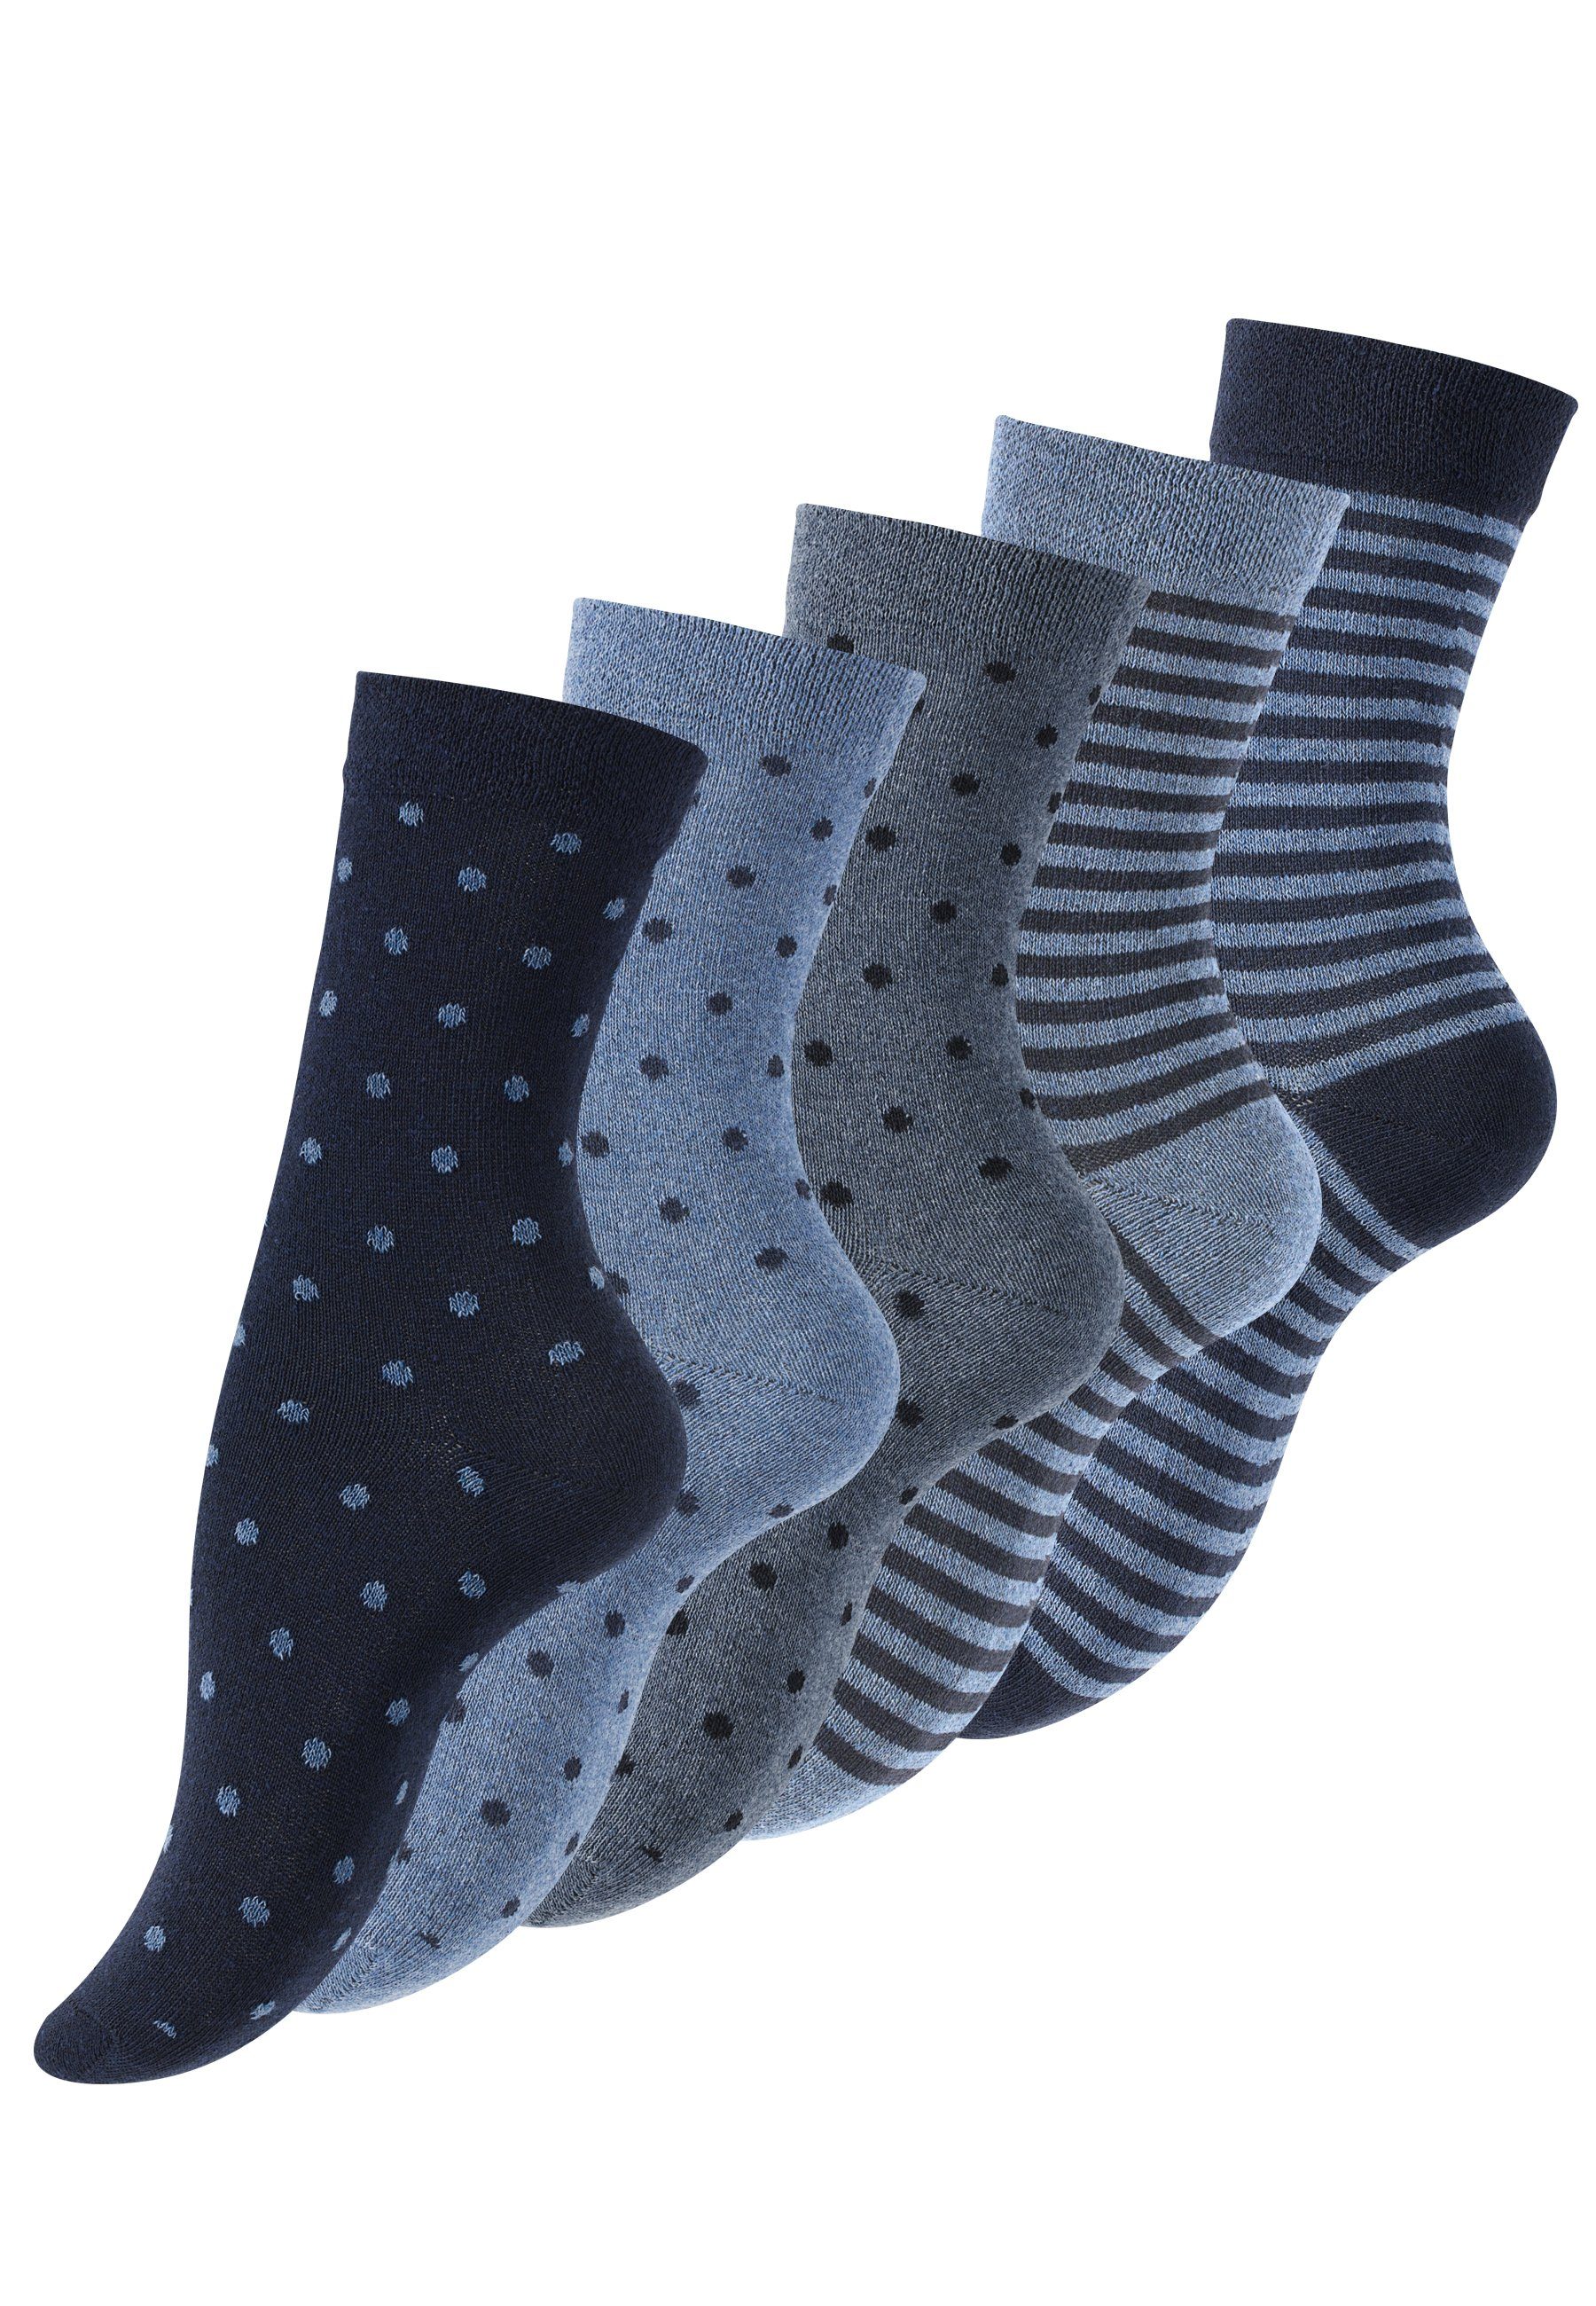 Vincent Creation® in Jeans Socken (10-Paar) angenehmer blau Baumwollqualität